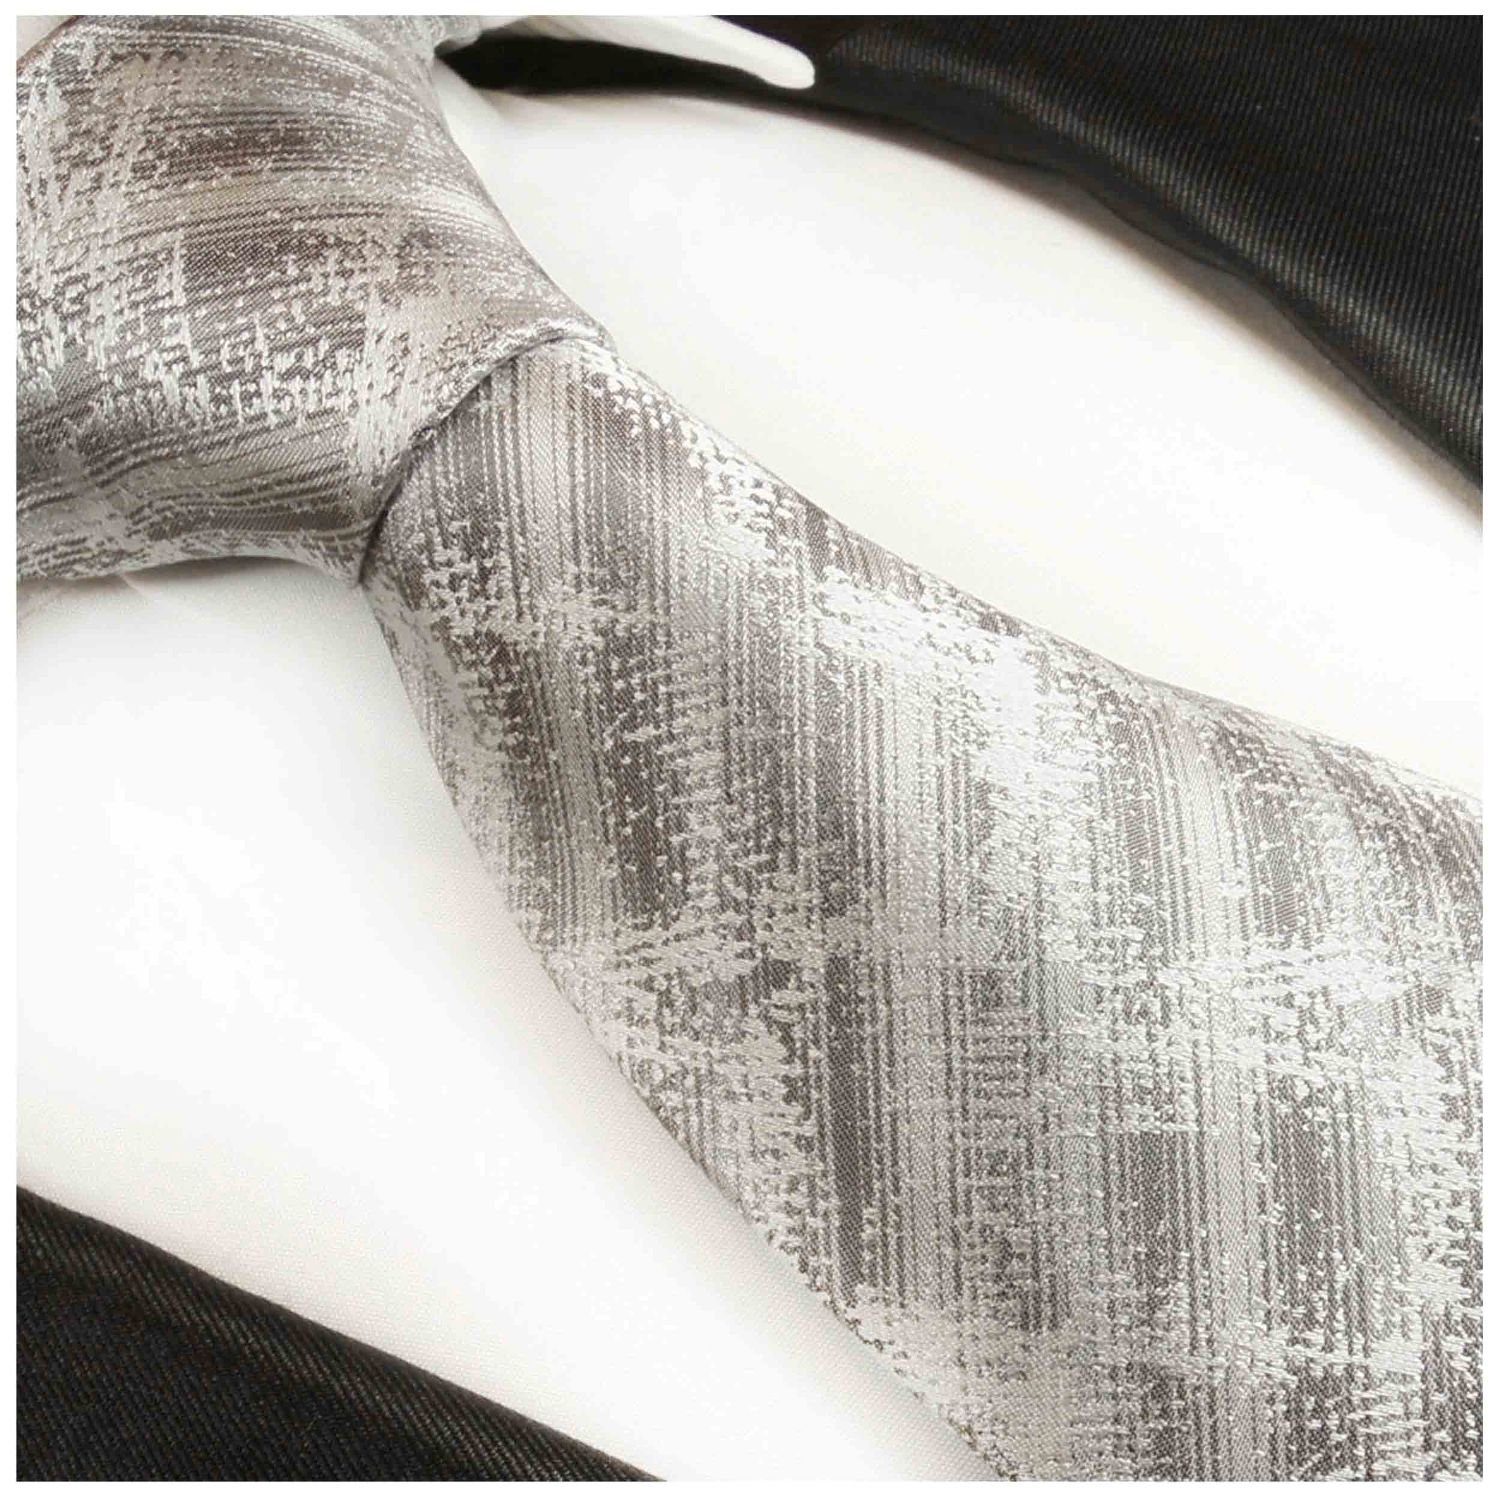 2017 Moderne Seidenkrawatte (6cm), Paul Malone Seide Herren Krawatte weiß Schmal 100% grau gestreift